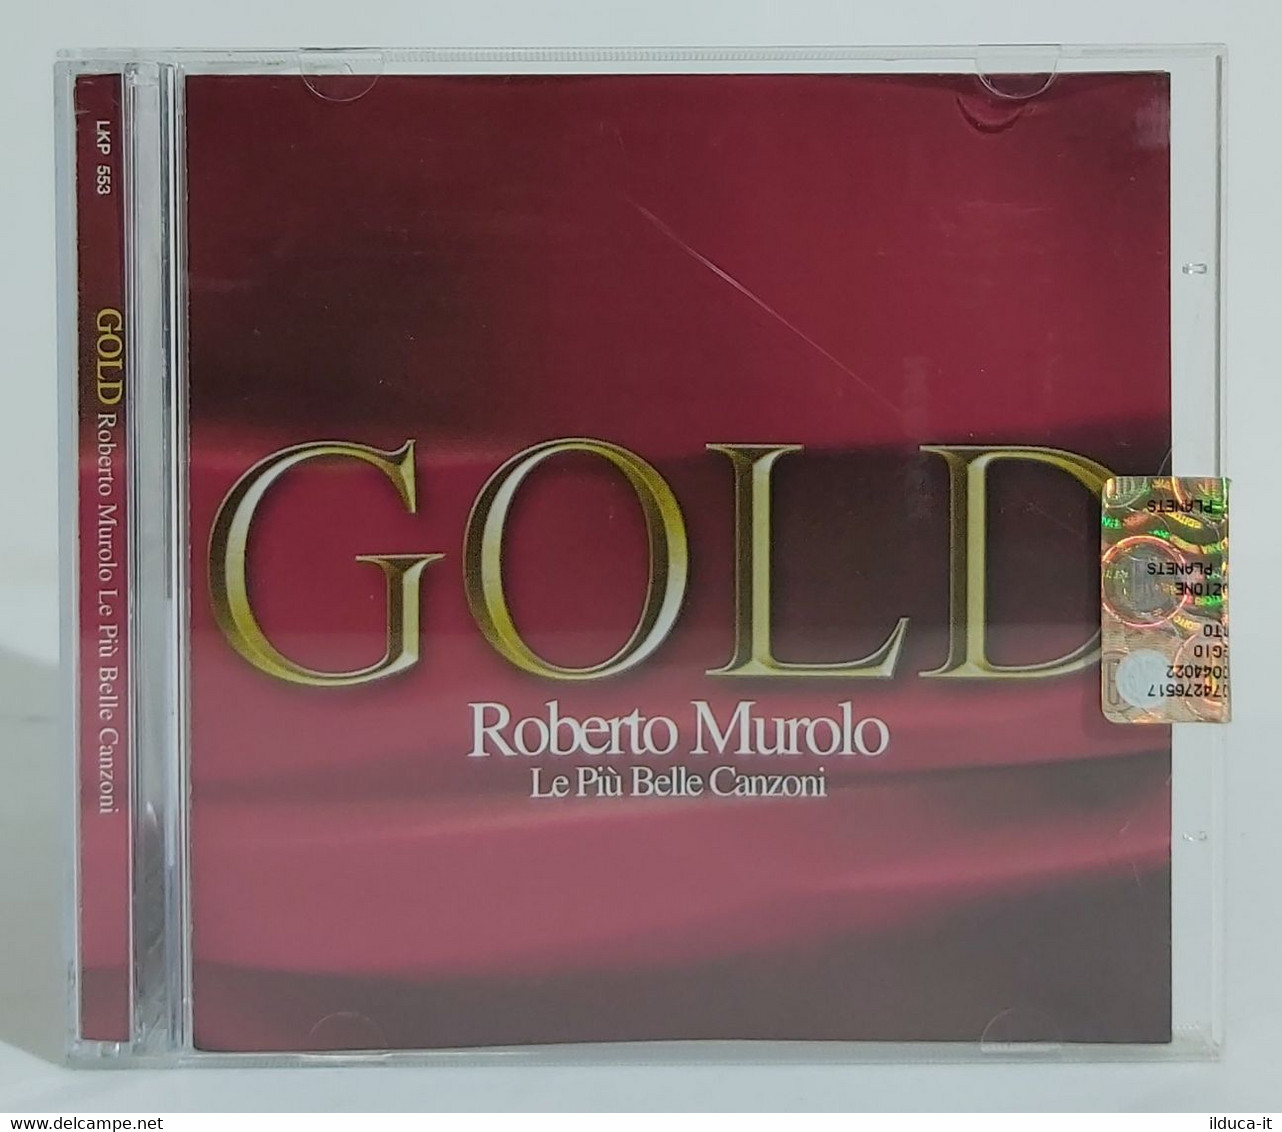 I102306 CD - Roberto Murolo - Gold Le Più Belle Canzoni - Musicali Festa 2005 - Altri - Musica Italiana